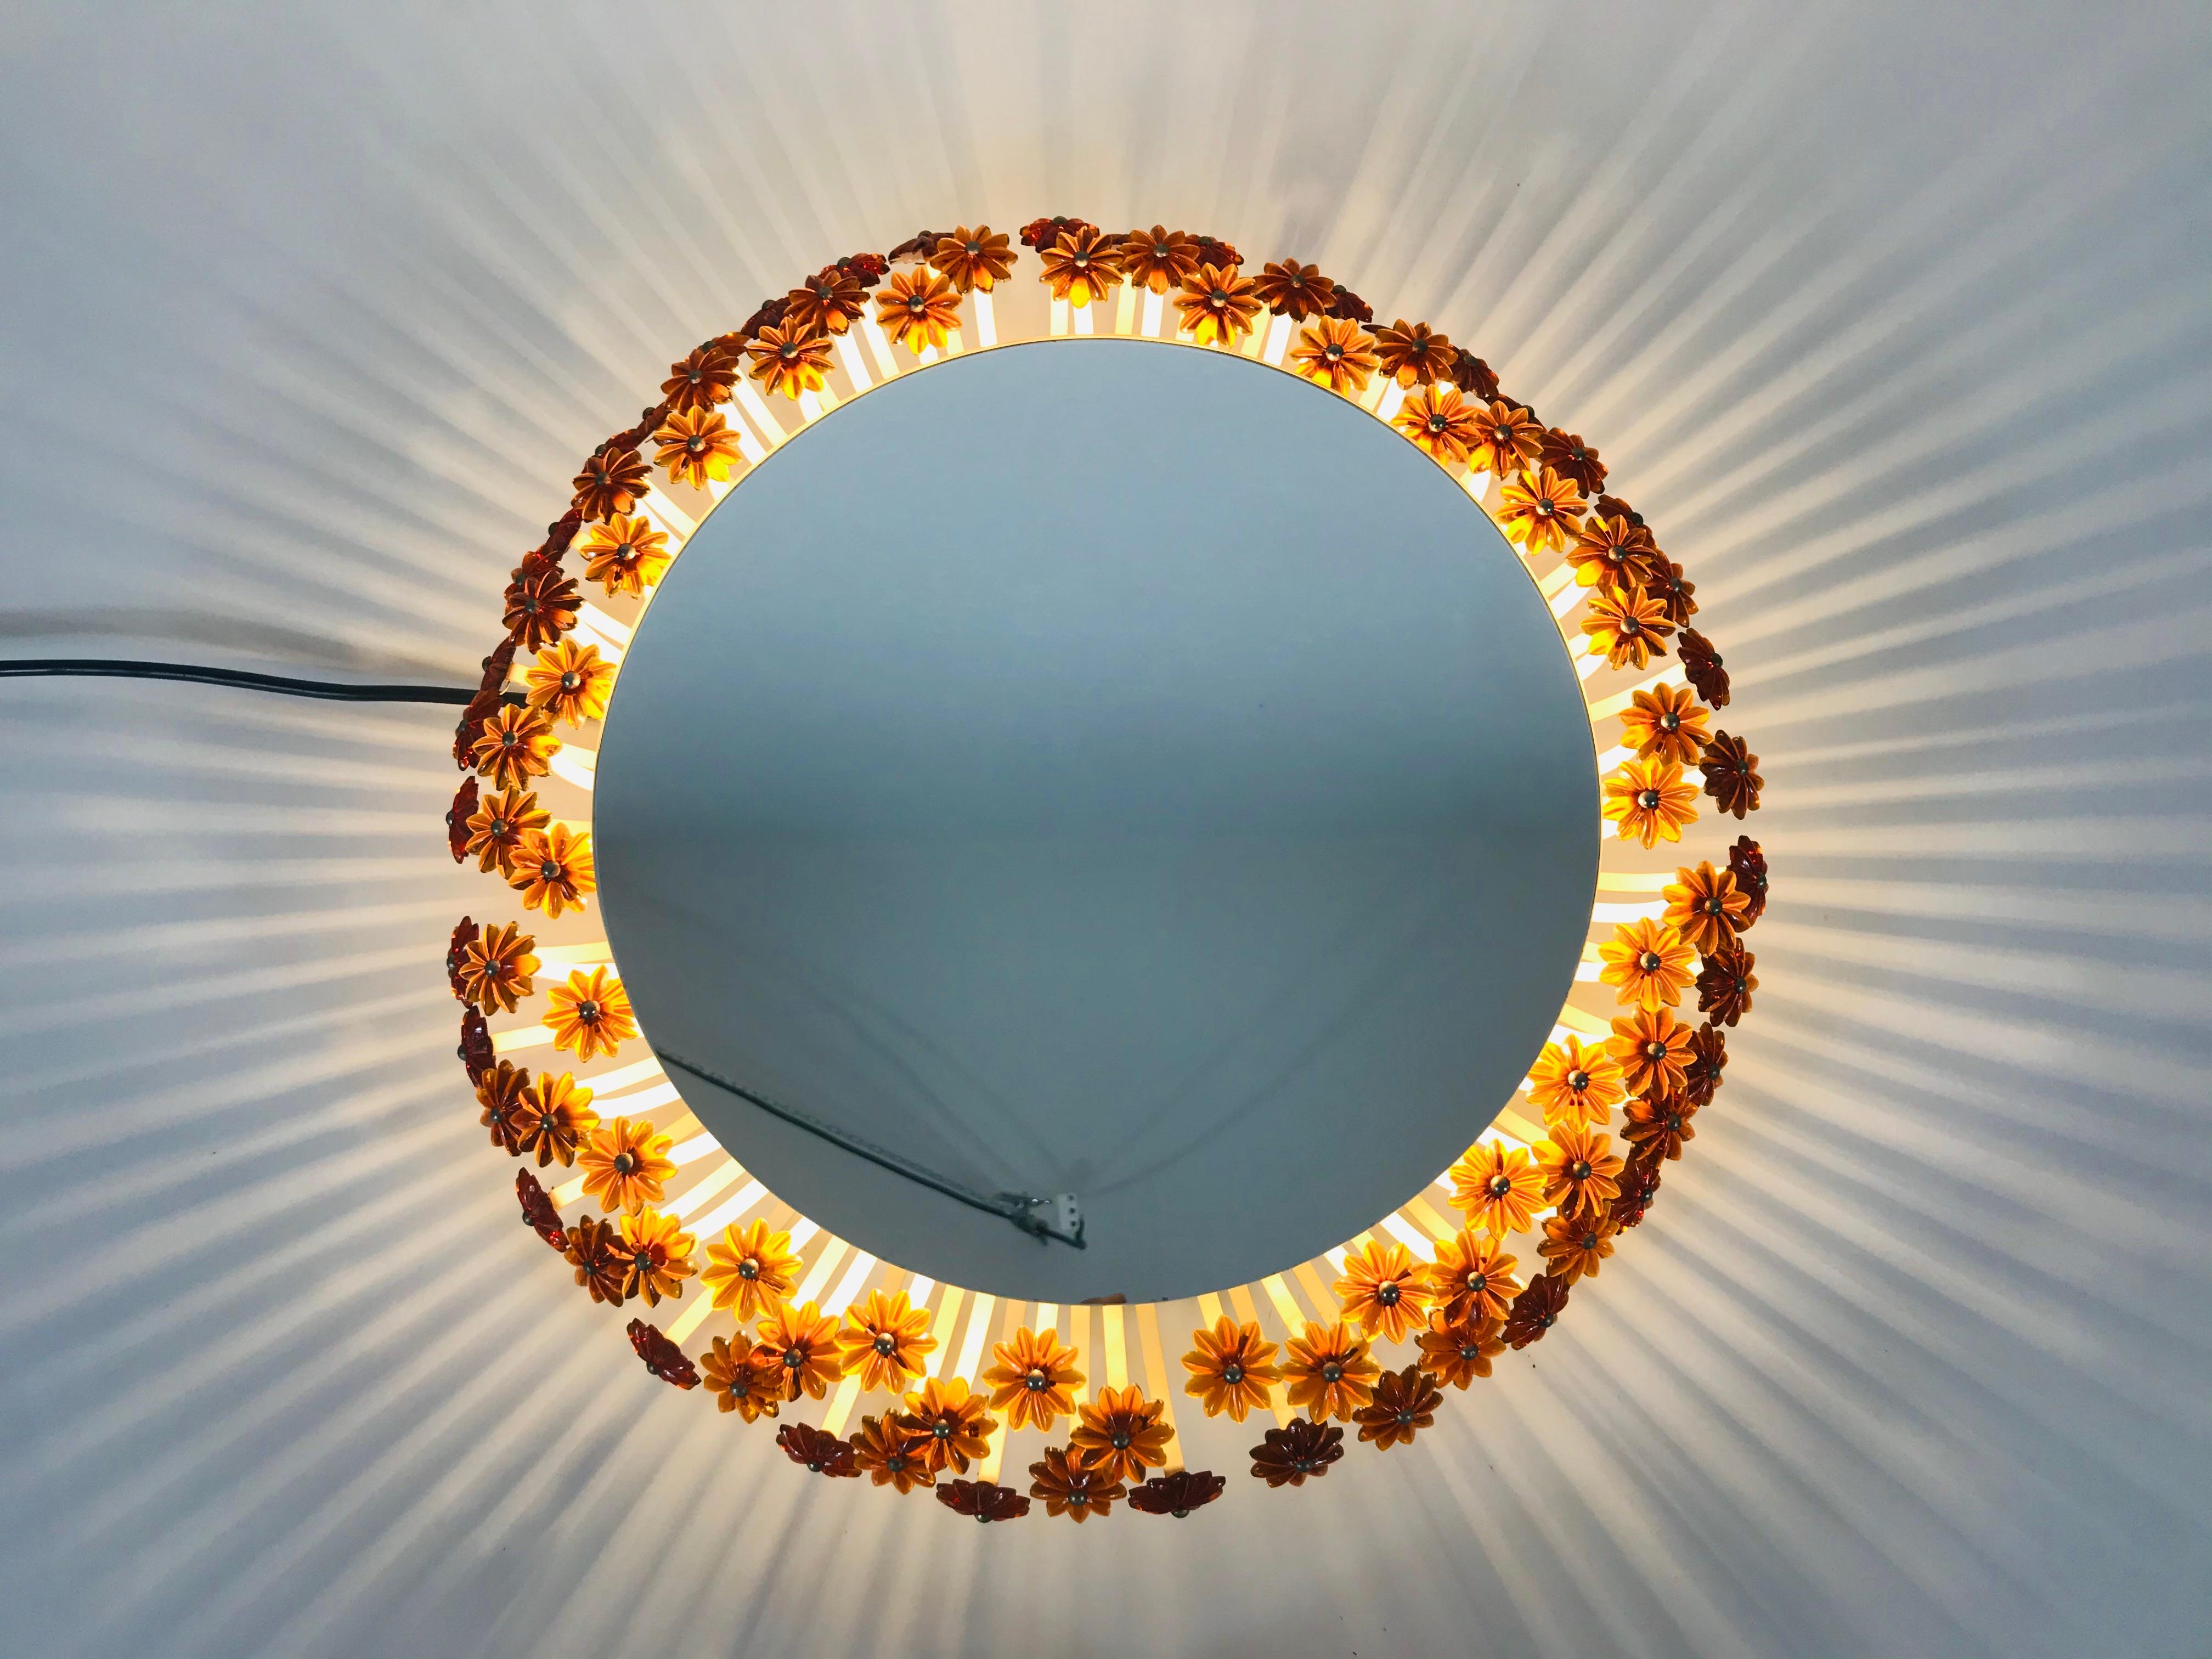 Un miroir mural éclairé des années 1960 fabriqué en Autriche. Il a été conçu par Emil Stejnar pour Rupert Nikoll. Le miroir a un design rond avec de belles fleurs en acrylique orange. Il y a une douille E27 à l'intérieur du cadre. Le miroir est en